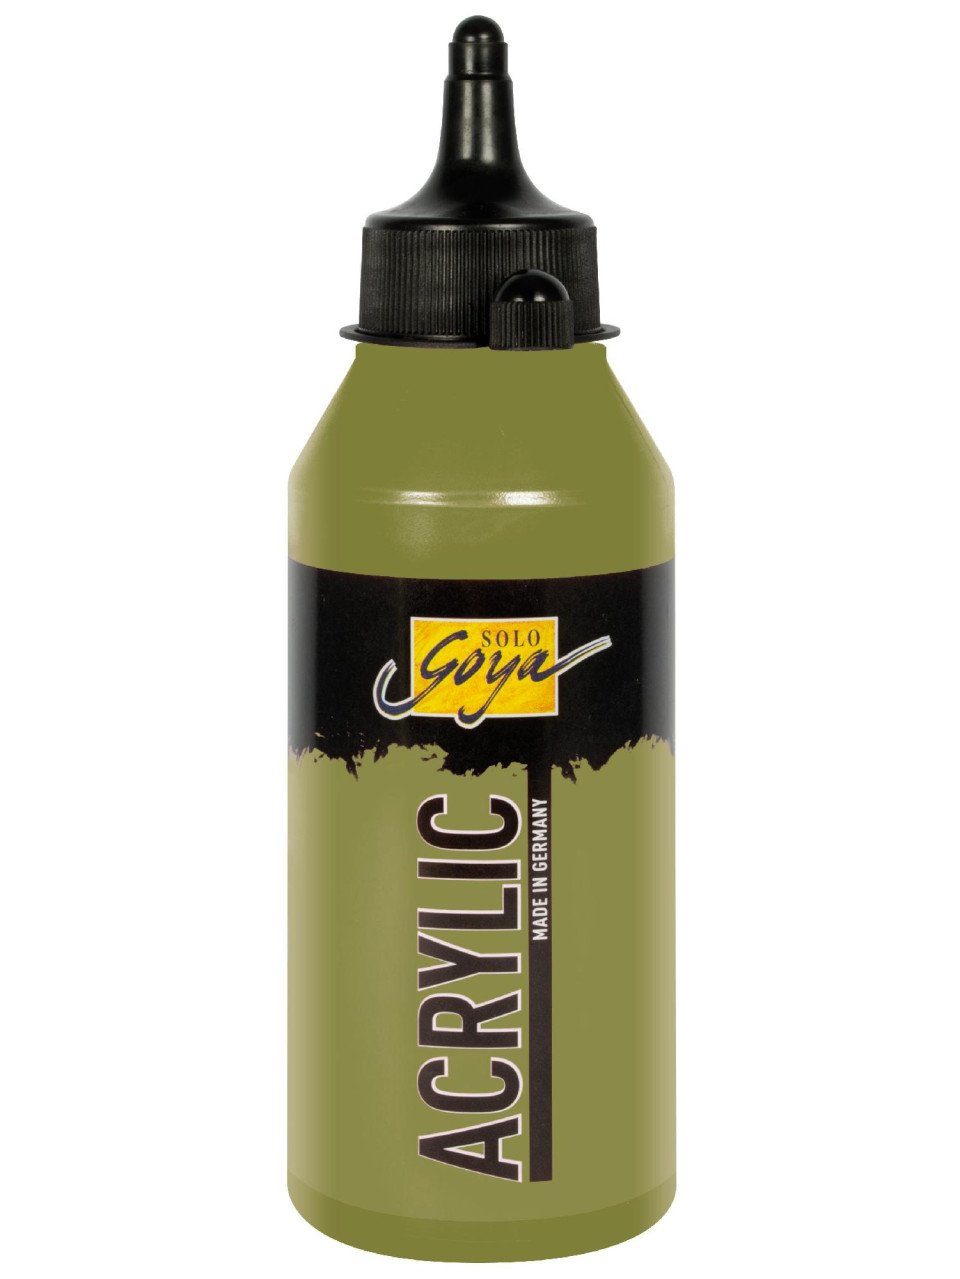 Kreul Acryl-Buntlack Kreul Solo Goya Acrylic grüne Erde 250 ml